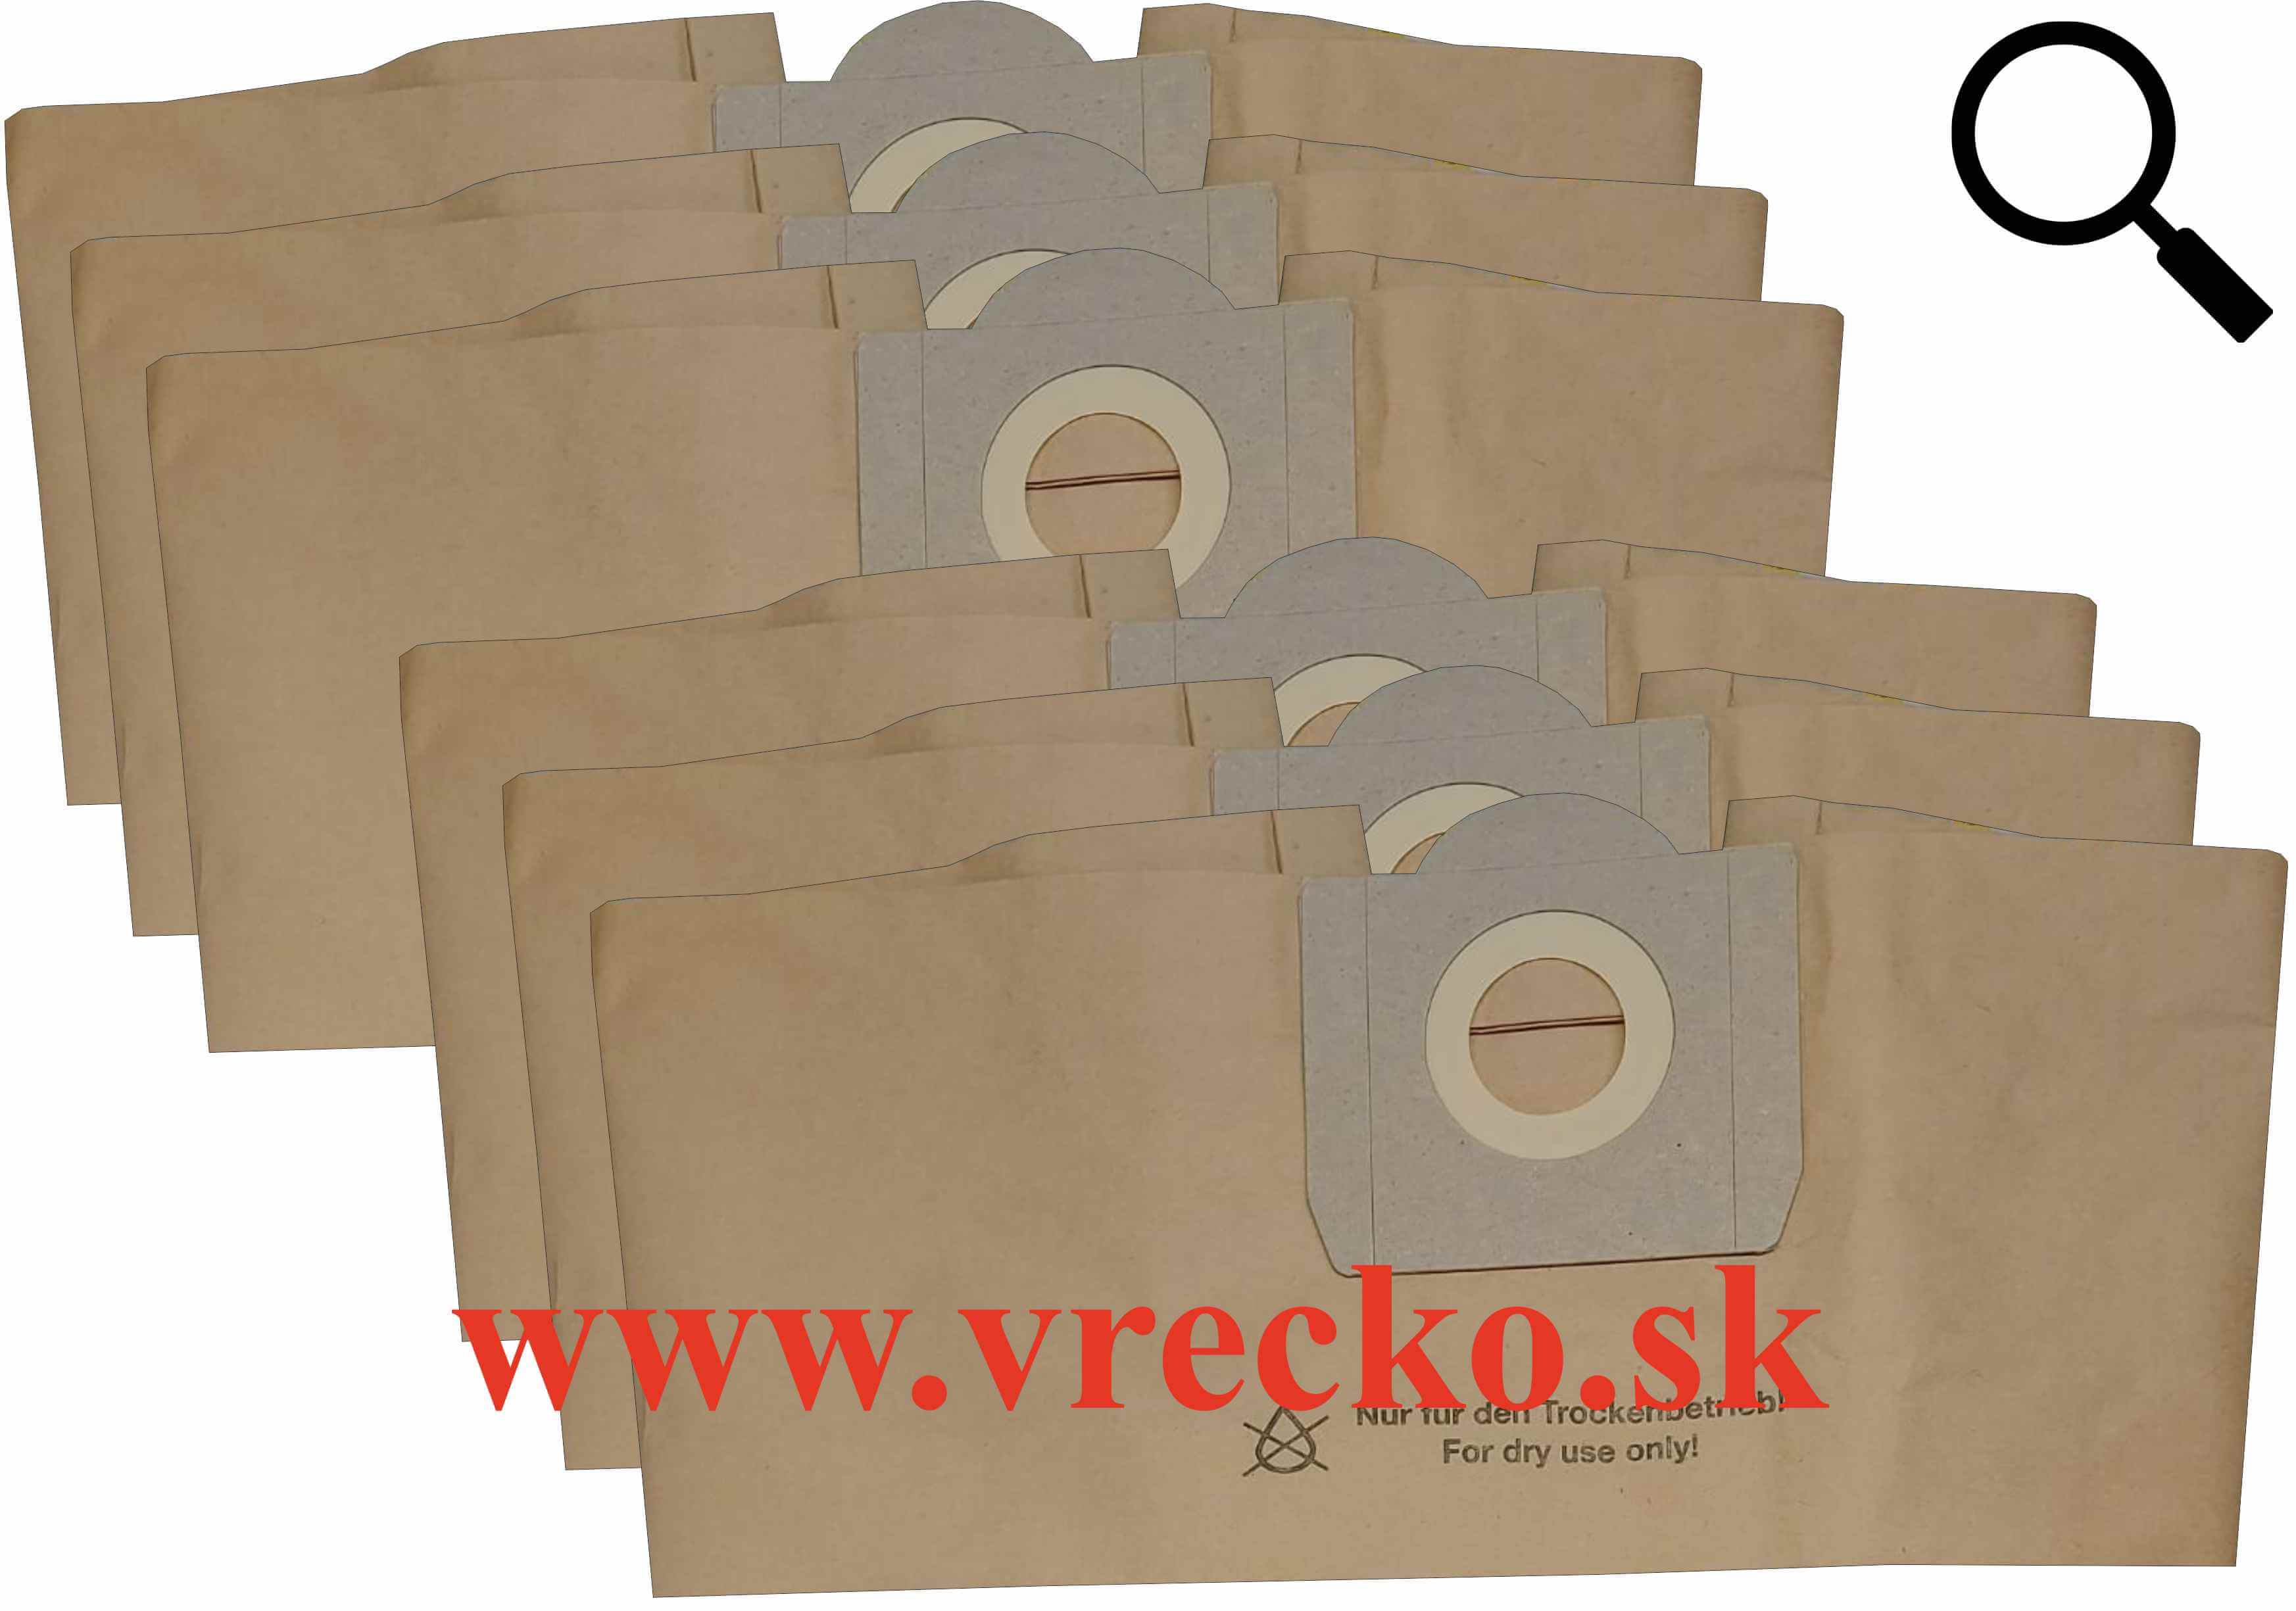 Einhell AS 1400 INOX - zvhodnen balenie typ S - papierov vreck do vysvaa, 6ks